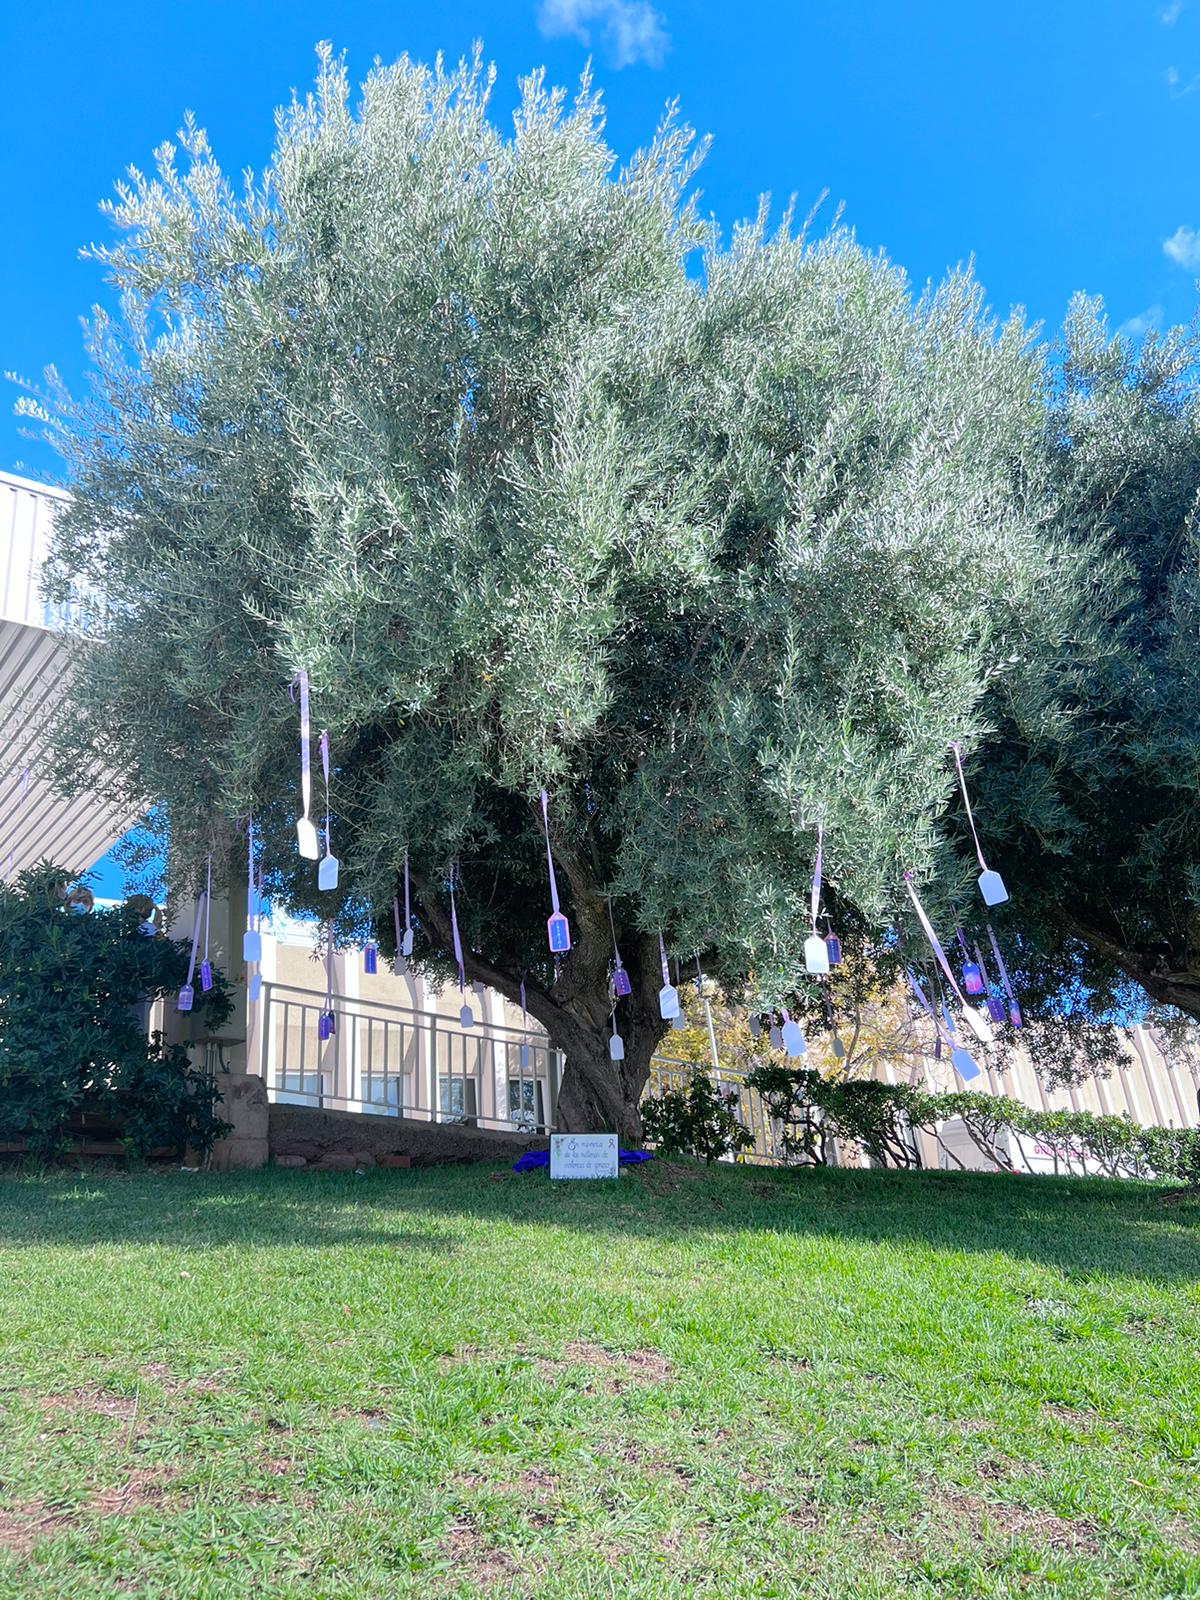 Placa commemorativa instal·lada sota un arbre decorat amb cordills morats i al final d'ells el nom d'algunes víctimes de violència de gènere d'enguany